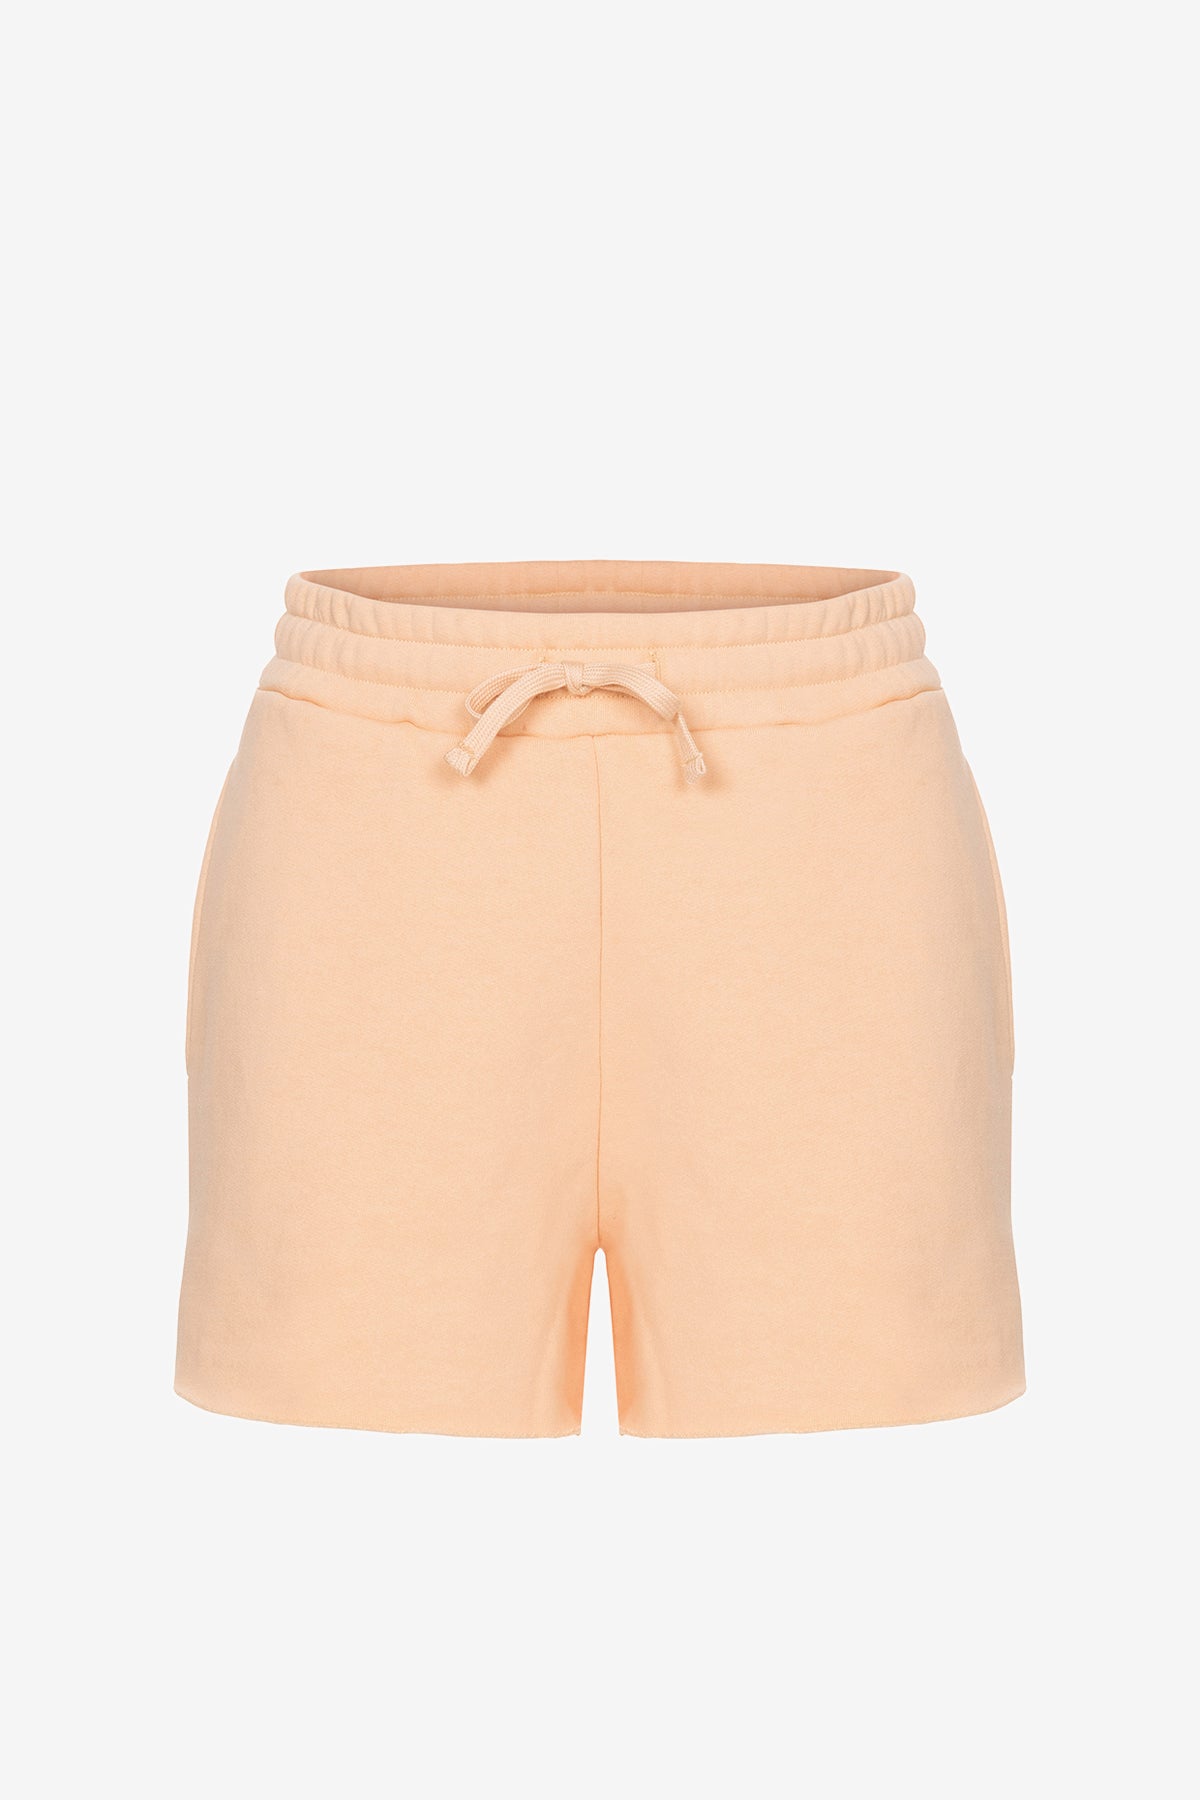 Francoise Sweat Shorts | Apricot Orange